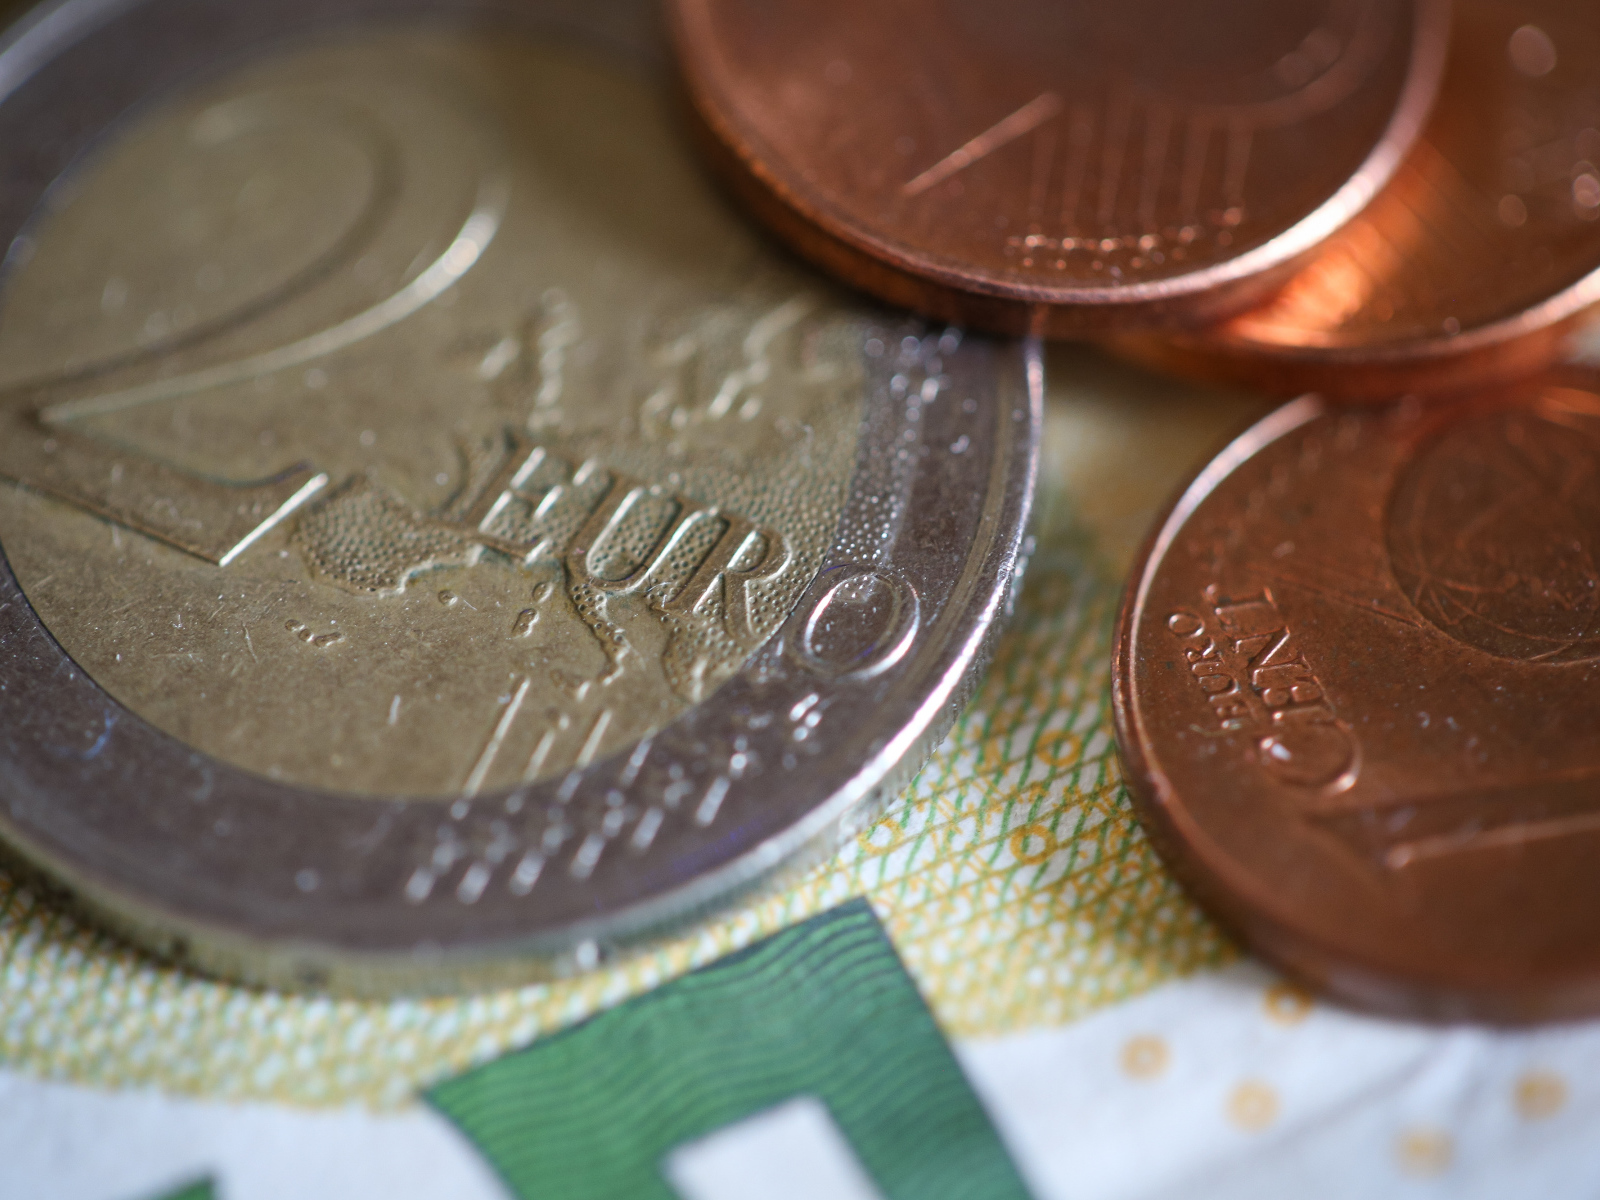 Монеты один и два евро на столе 